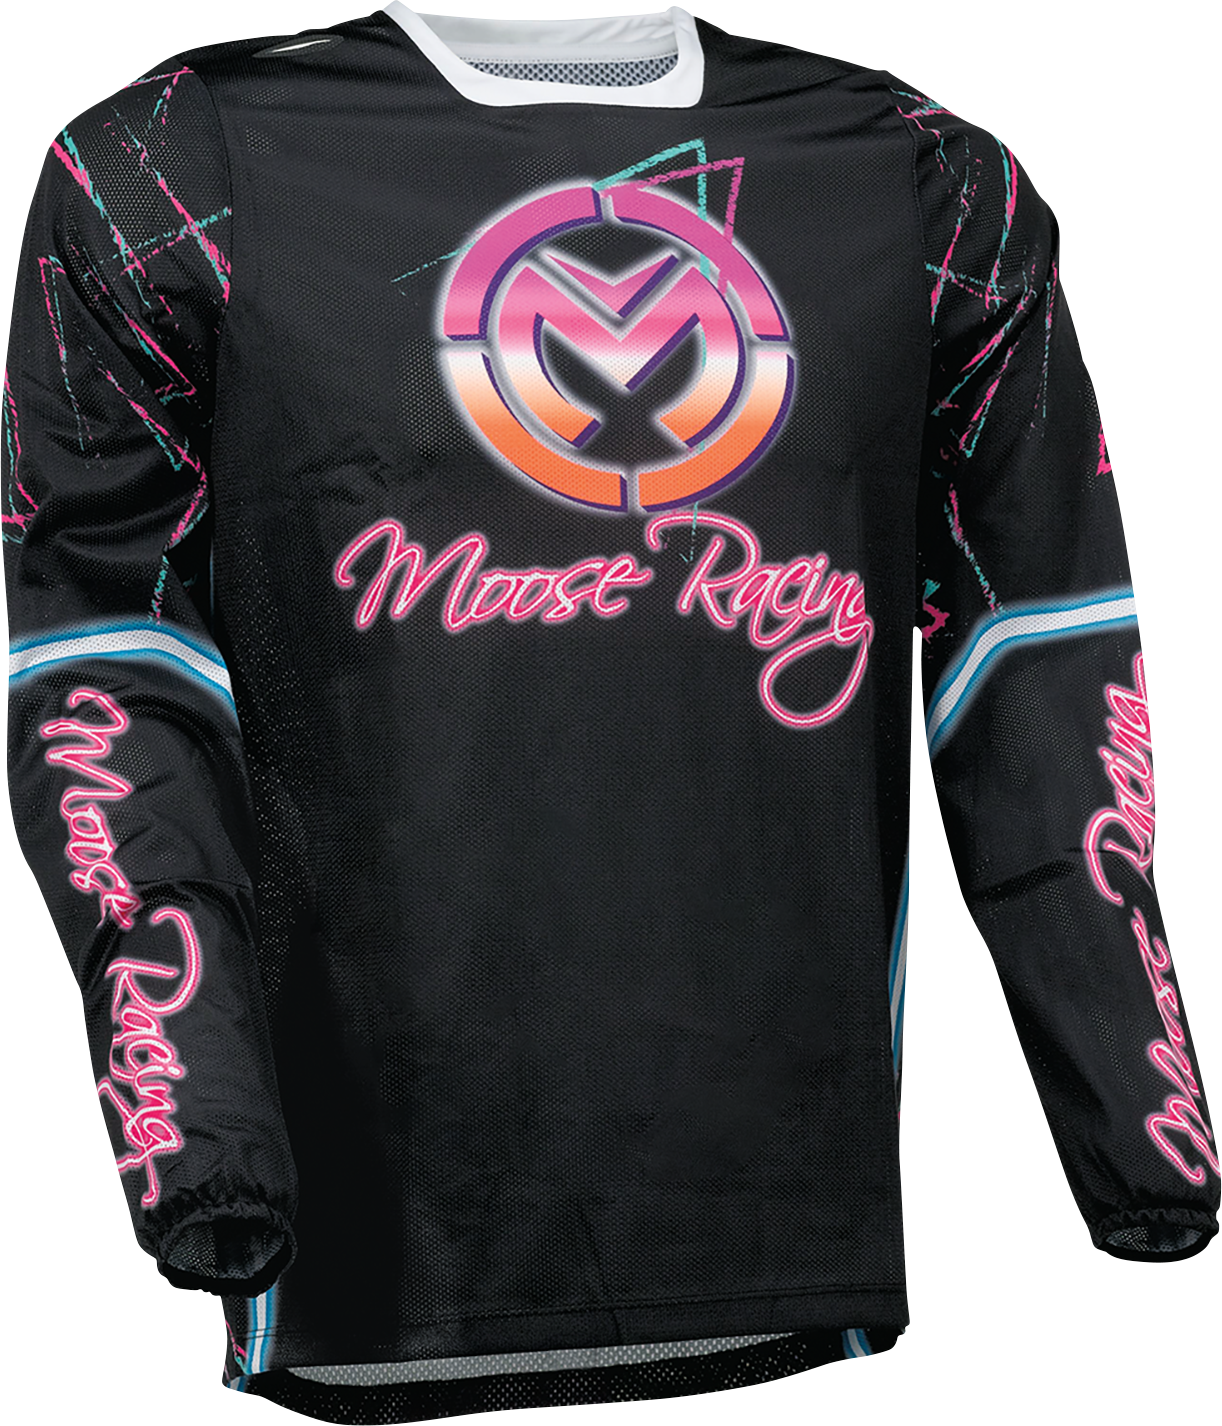 Camiseta MOOSE RACING Sahara - Rosa/Negro - 3XL 2910-7455